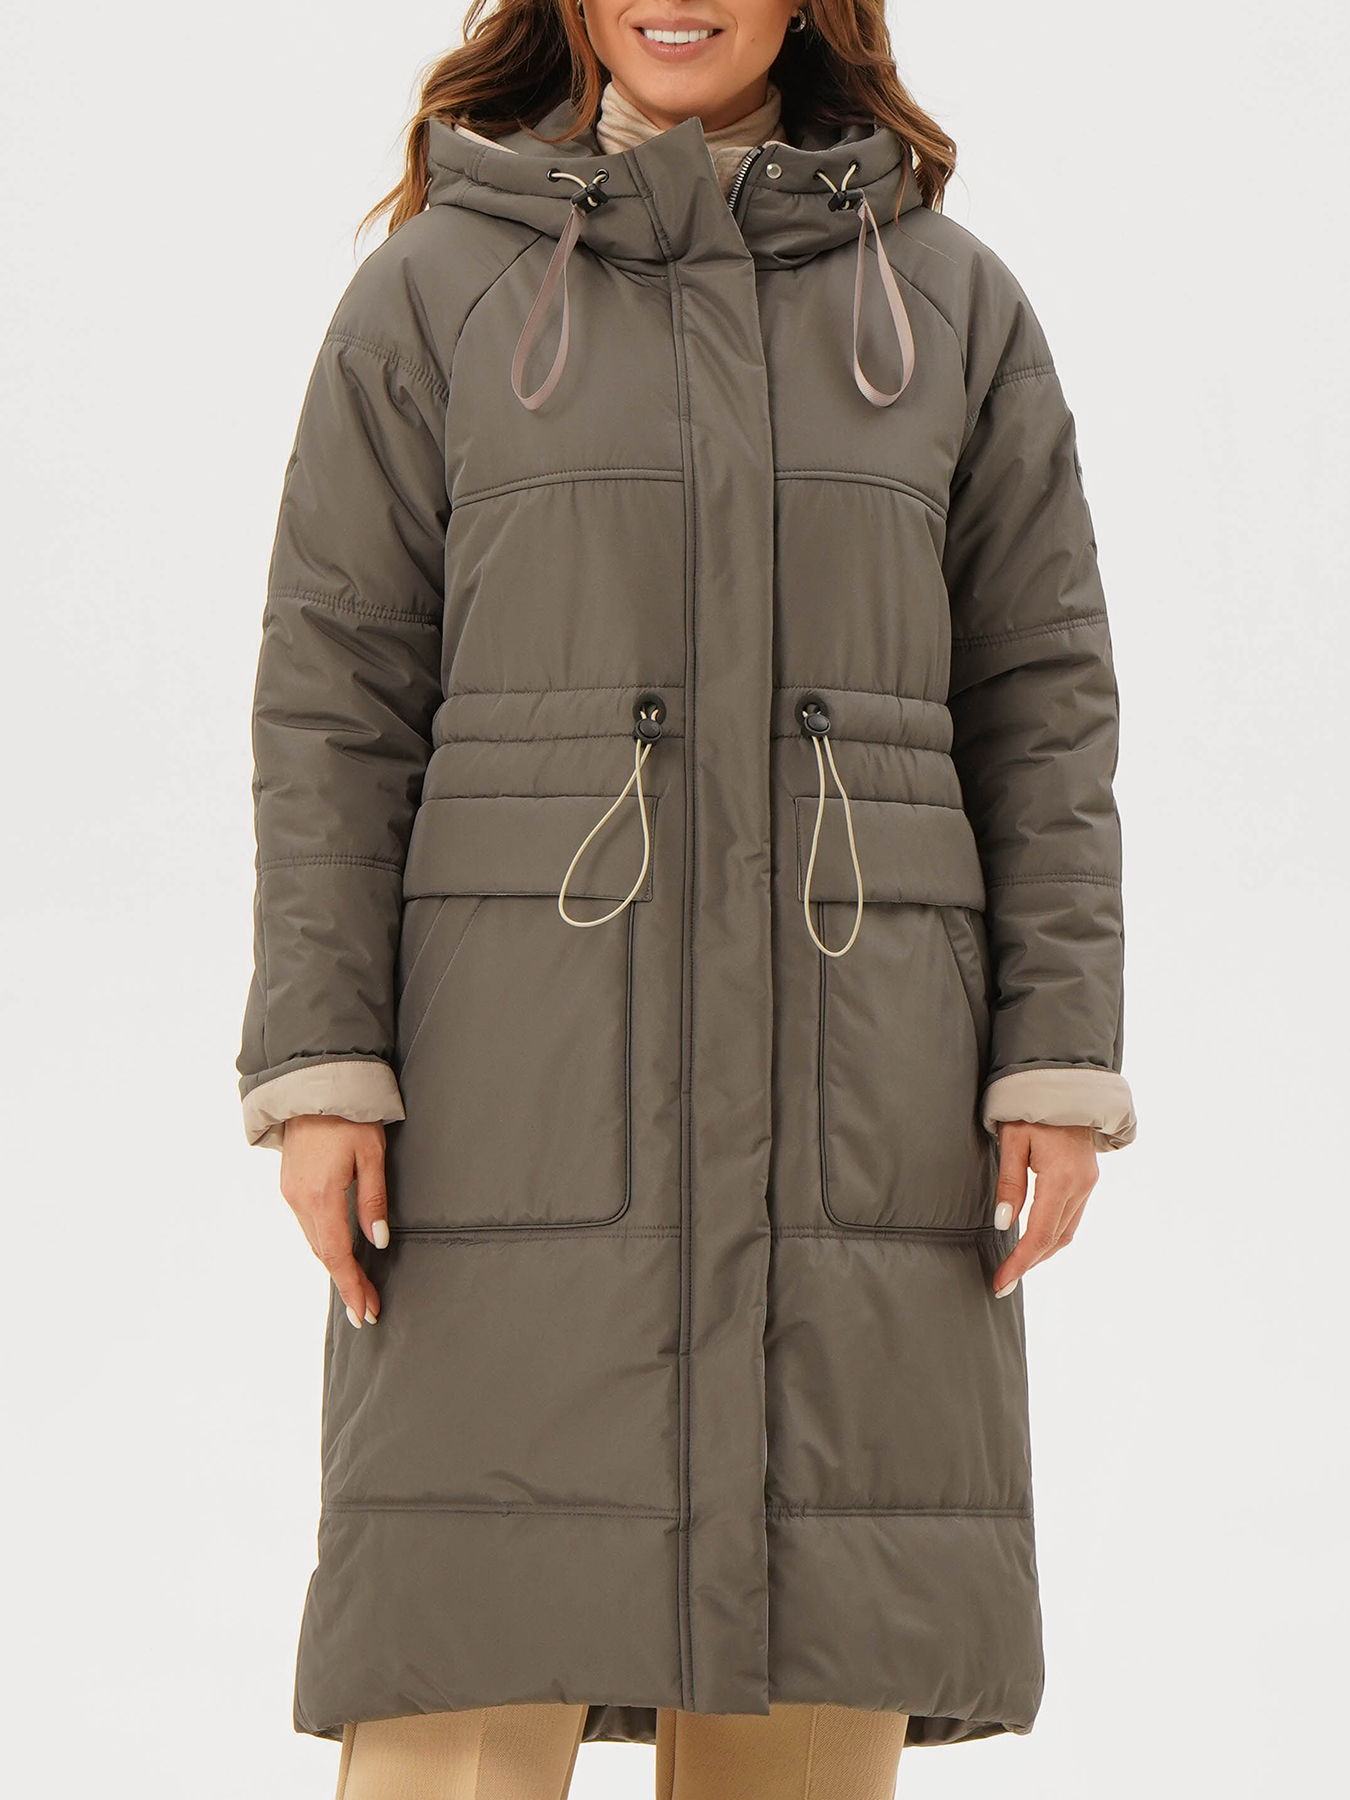 Пальто зимнее Maritta 433583-026, цвет хаки, размер 50